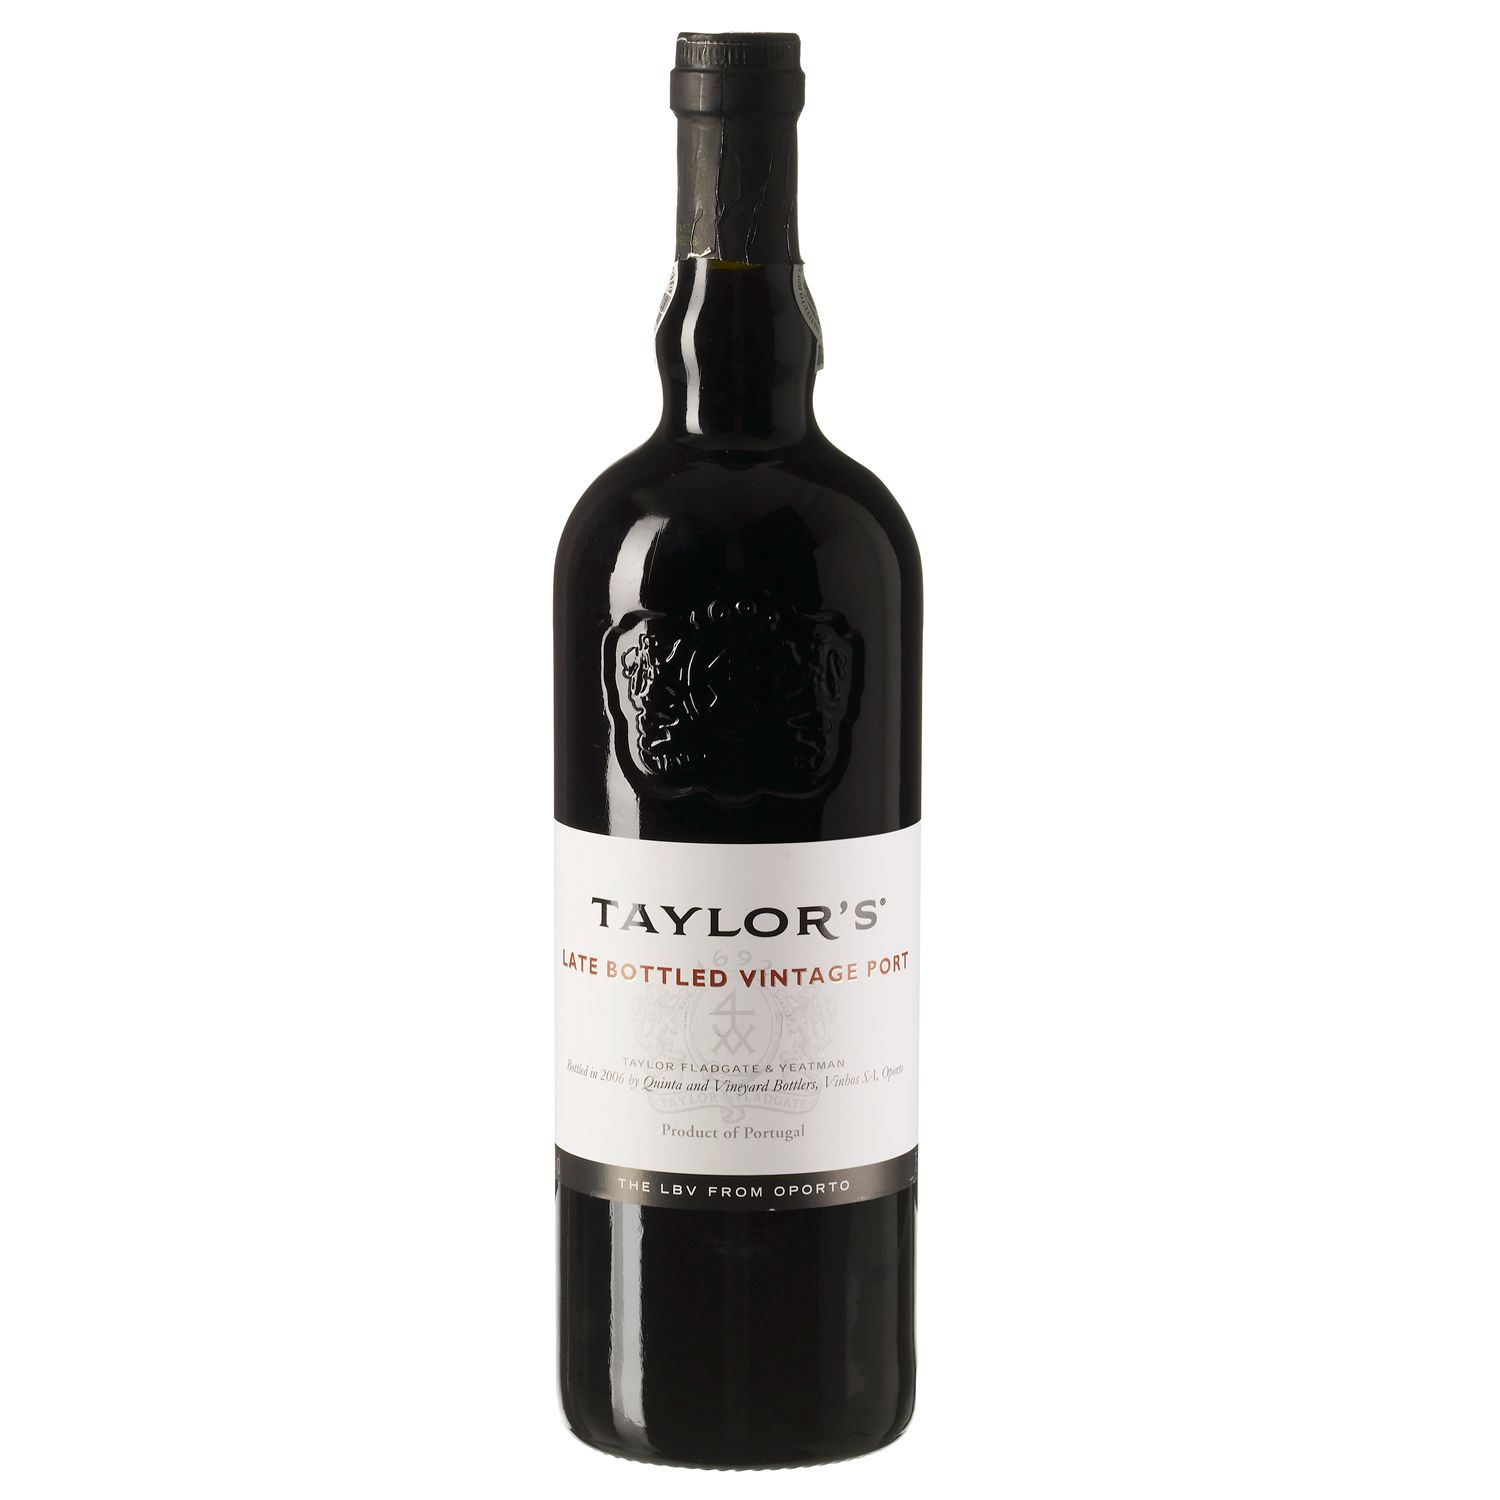 Unbranded Taylorand#39;s Late Bottled Vintage Port 2001